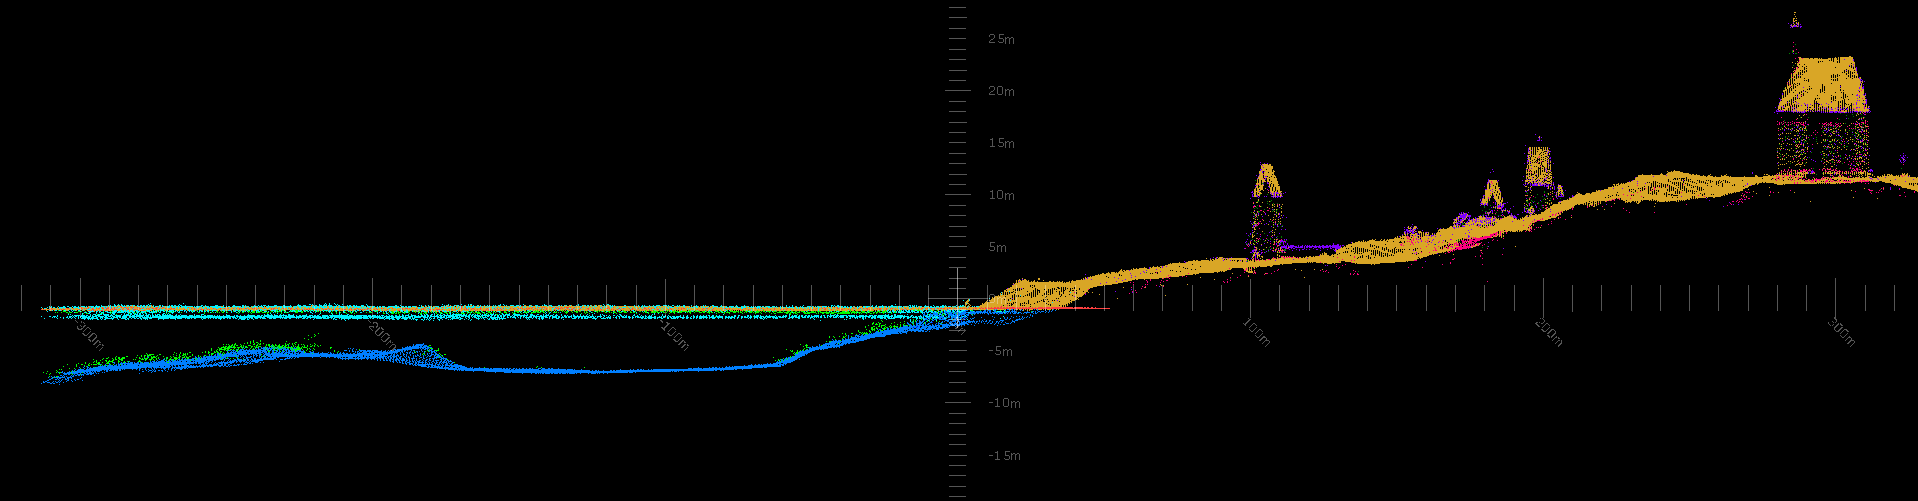 Les premiers résultats non traités : l’Ile aux Marins et les fonds environnants. L’échelle verticale est exagérée ce qui explique la déformation des bâtiments. La surface d’eau est représentée par une ligne verticale.